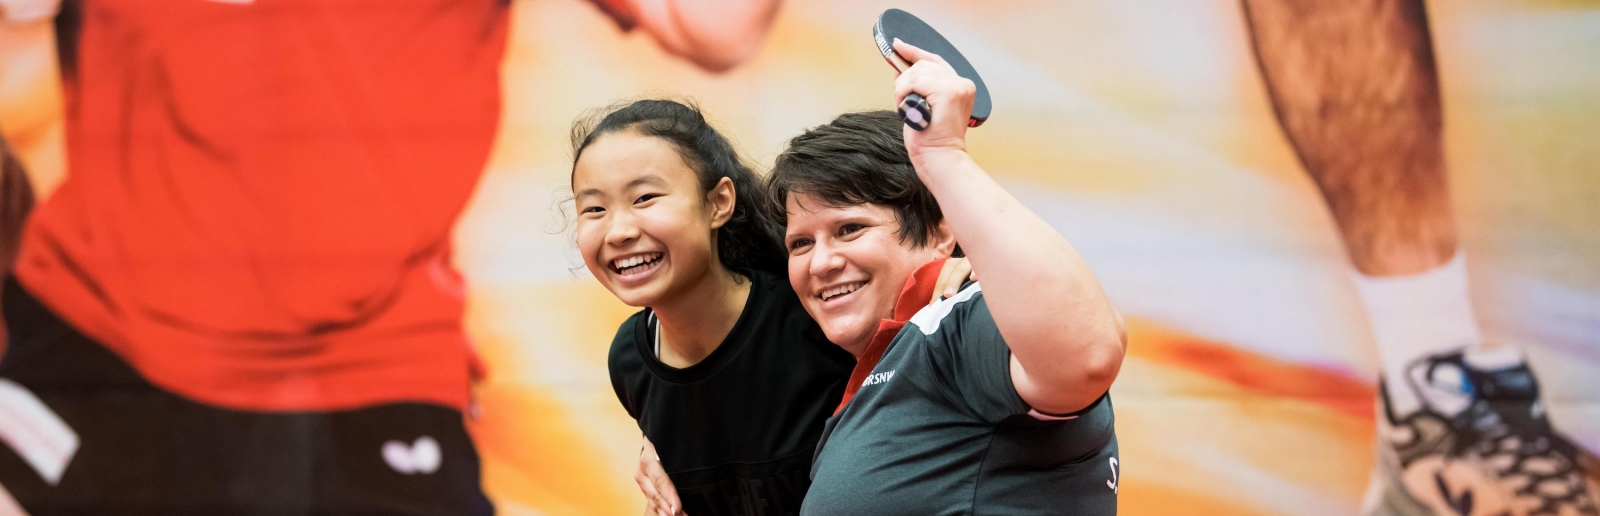 Zwei Tischtennisspielerinnen freuen sich, eine von ihnen sitzt im Rollstuhl. Im Hintergrund an der Wand ein großes Bild von einem Tischtennisspieler im roten T-Shirt und schwarzer, kurzer Hose.